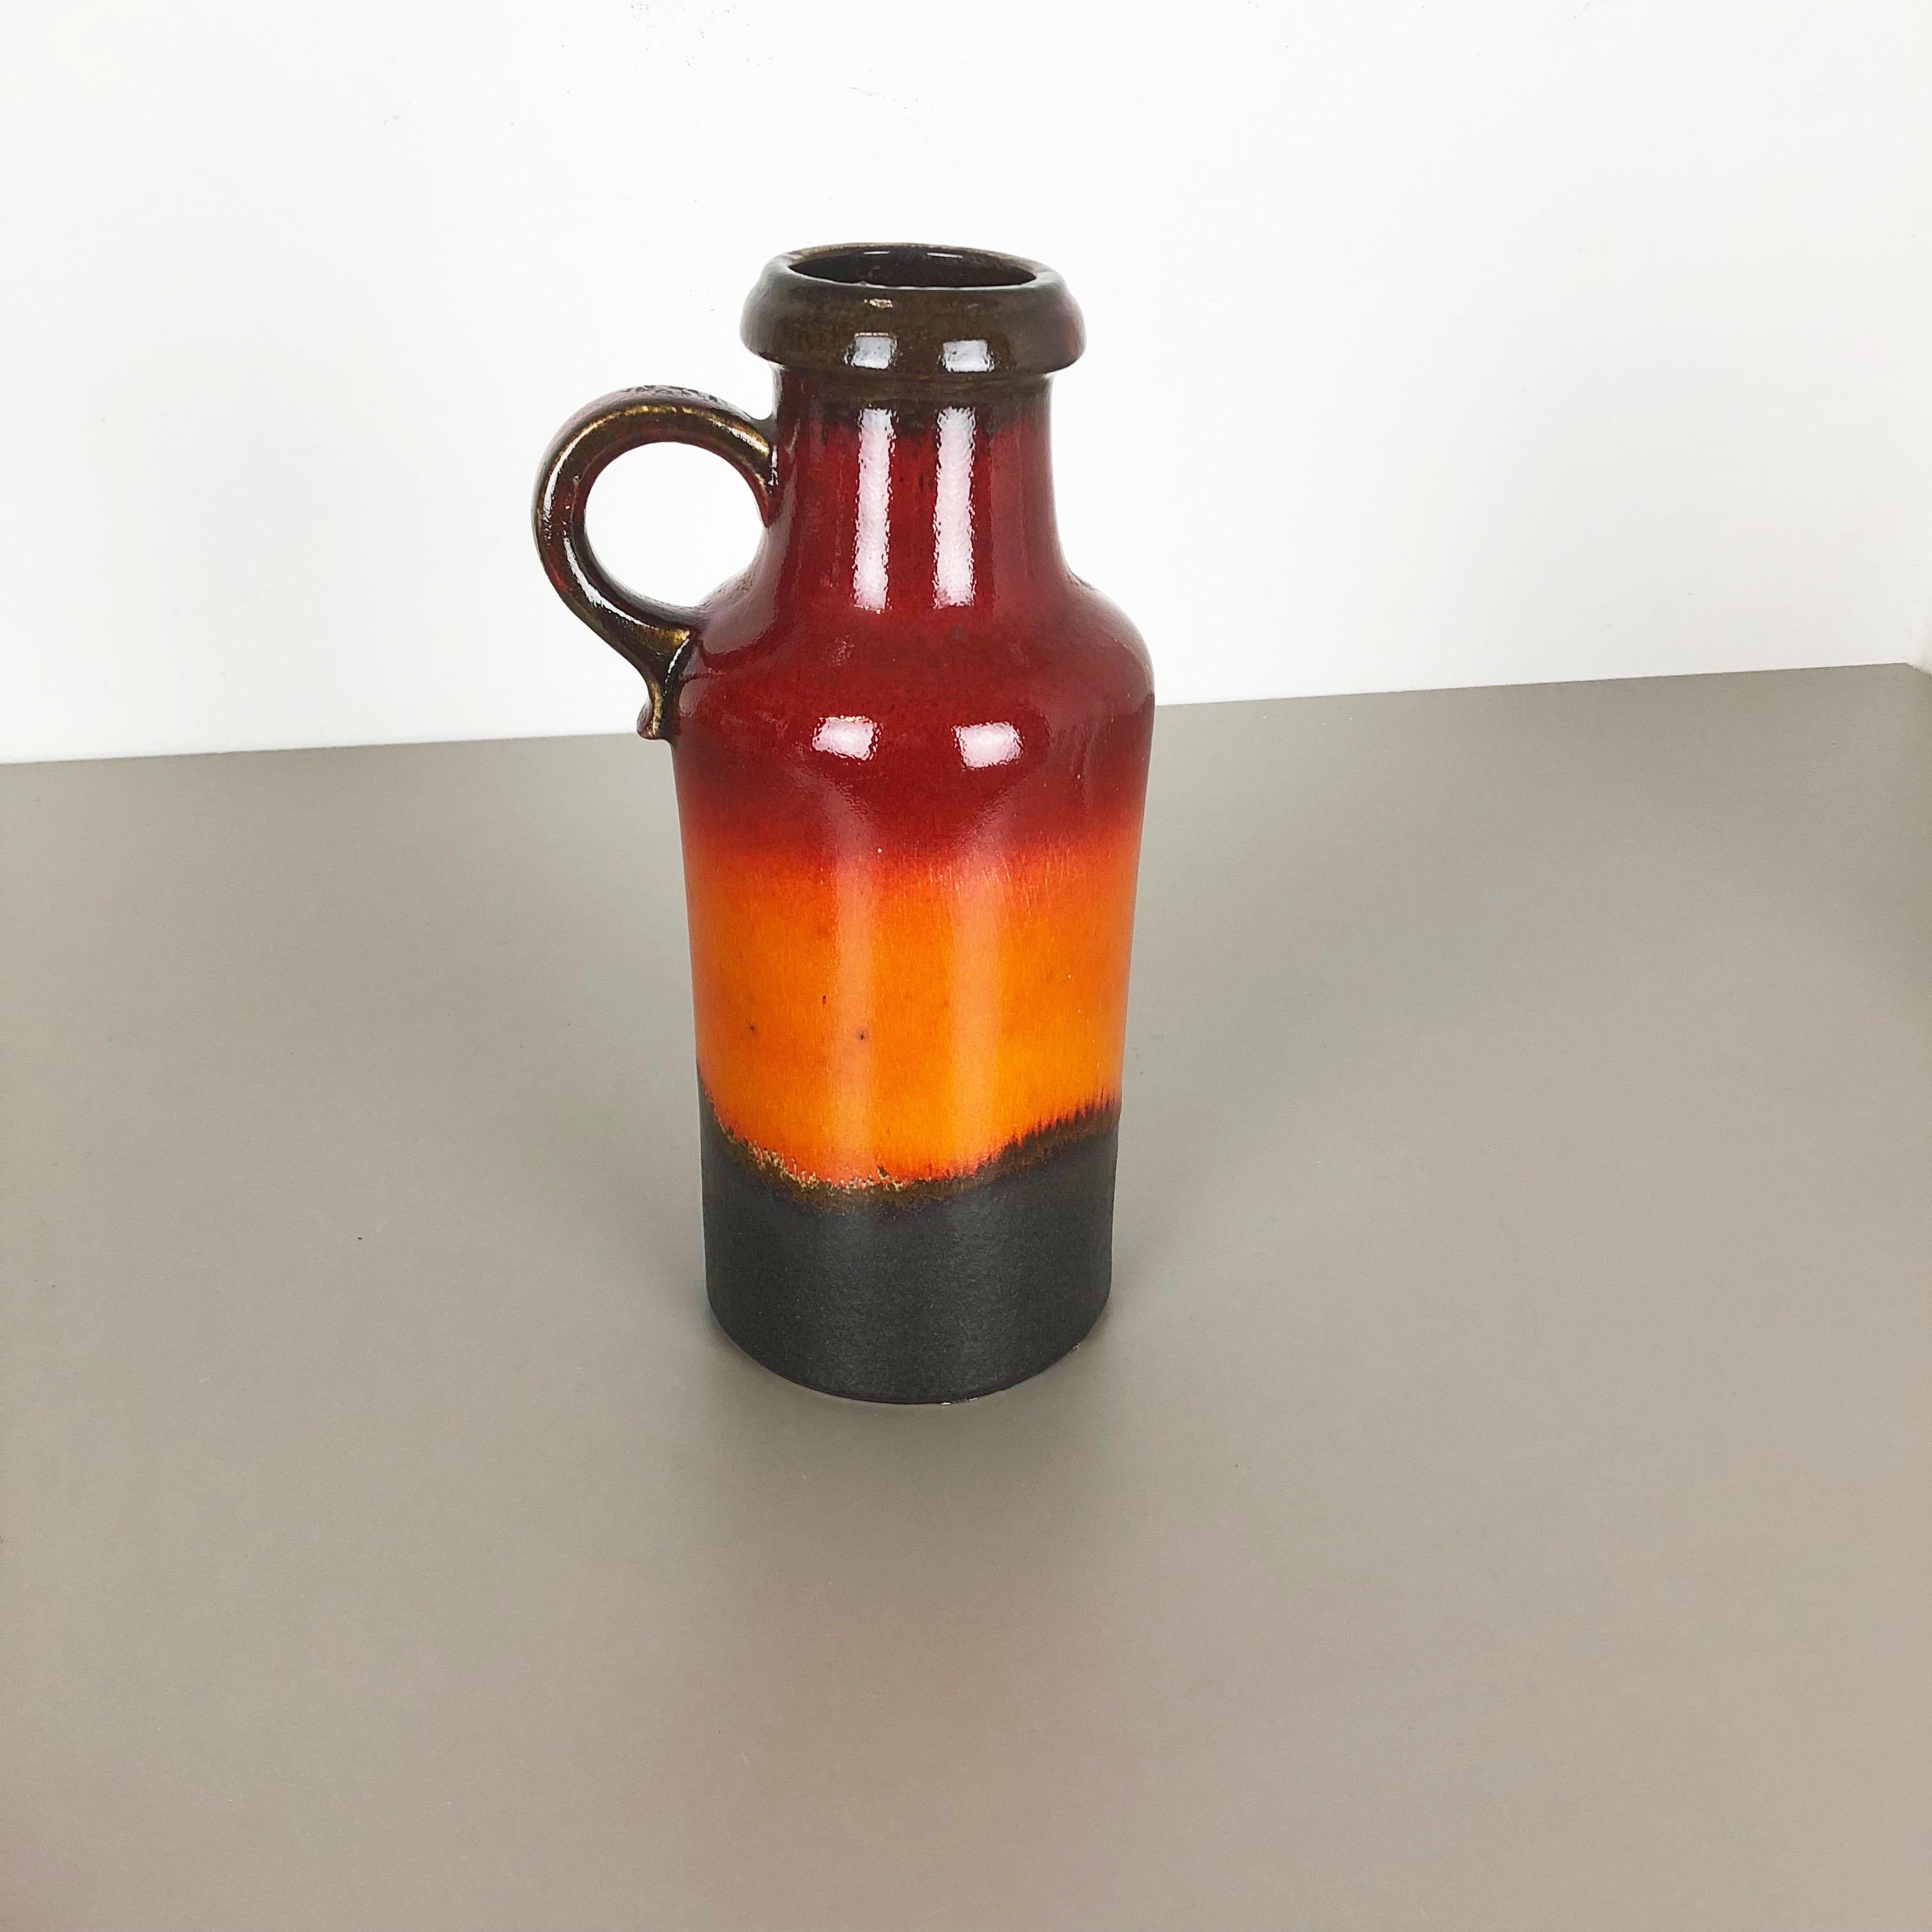 Artikel:

Fette Lava-Kunstvase


Produzent:

Scheurich, Deutschland


Entwurf:

Nr. 407-35



Jahrzehnt:

1970s.




Diese originelle Vintage-Vase wurde in den 1970er Jahren in Deutschland hergestellt. Er ist aus Keramik in